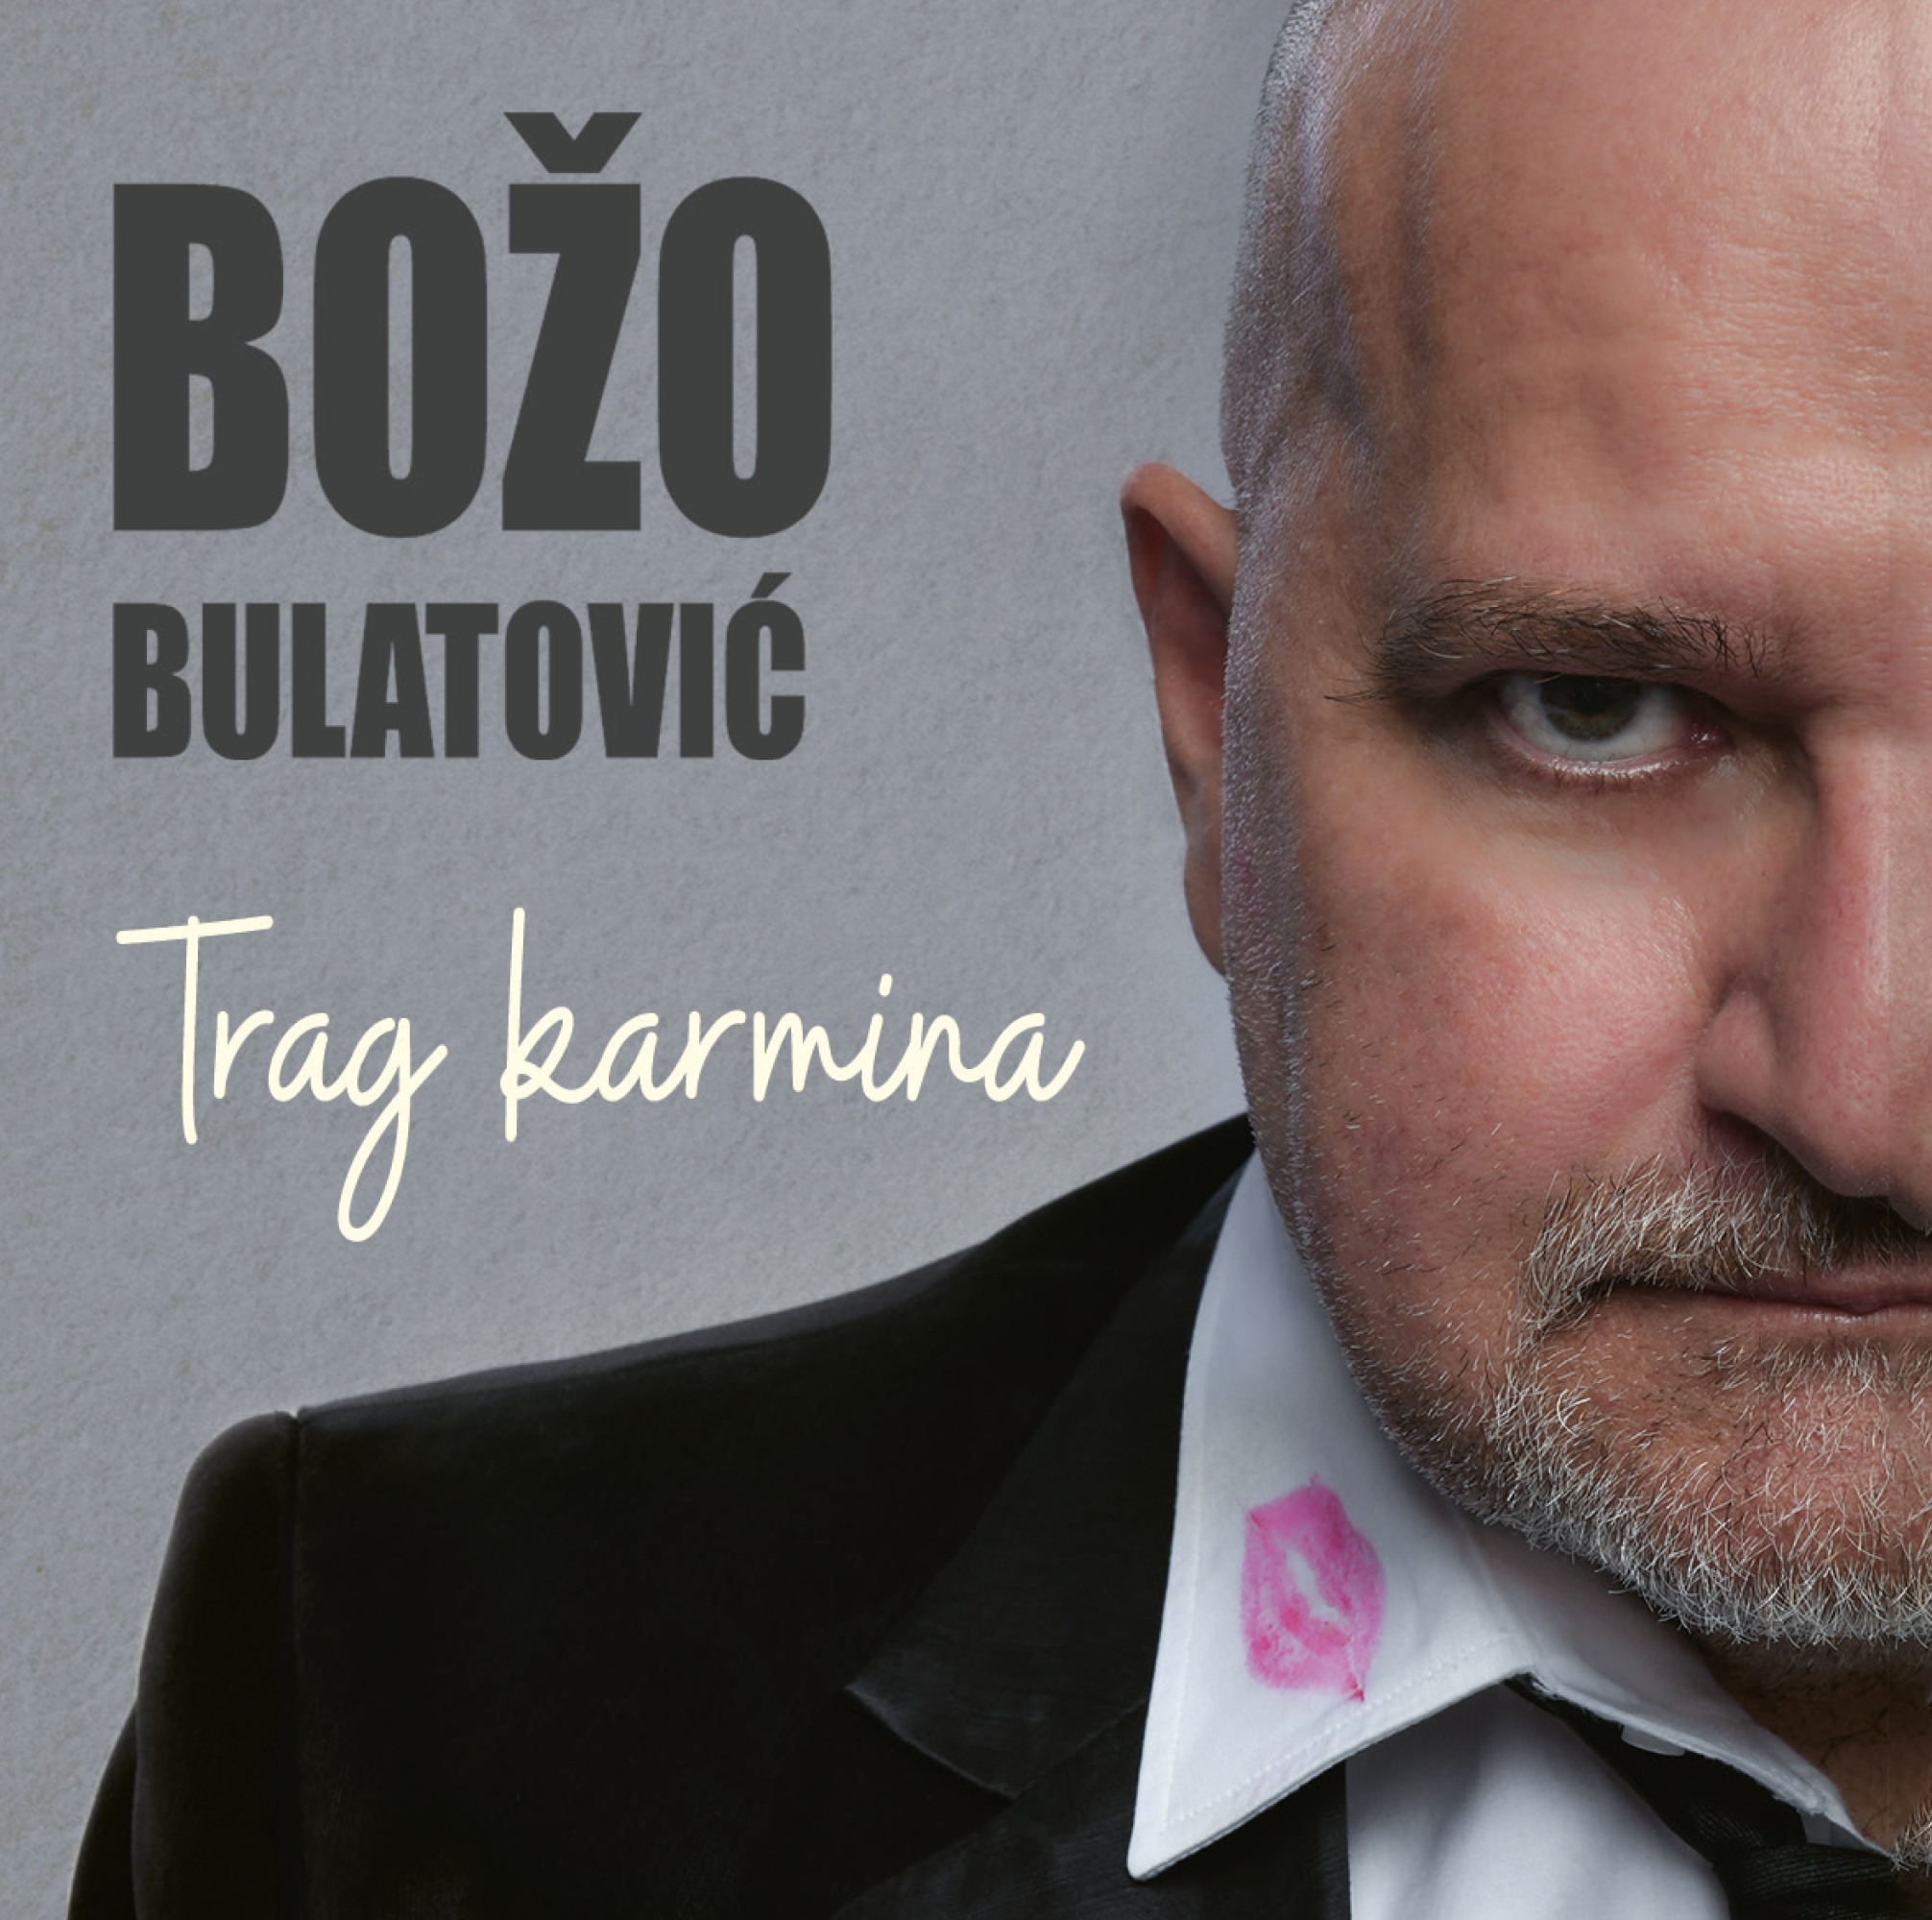 Crnogorski glazbenik Božo Bulatović otkrio trag karmina na svojoj kragni